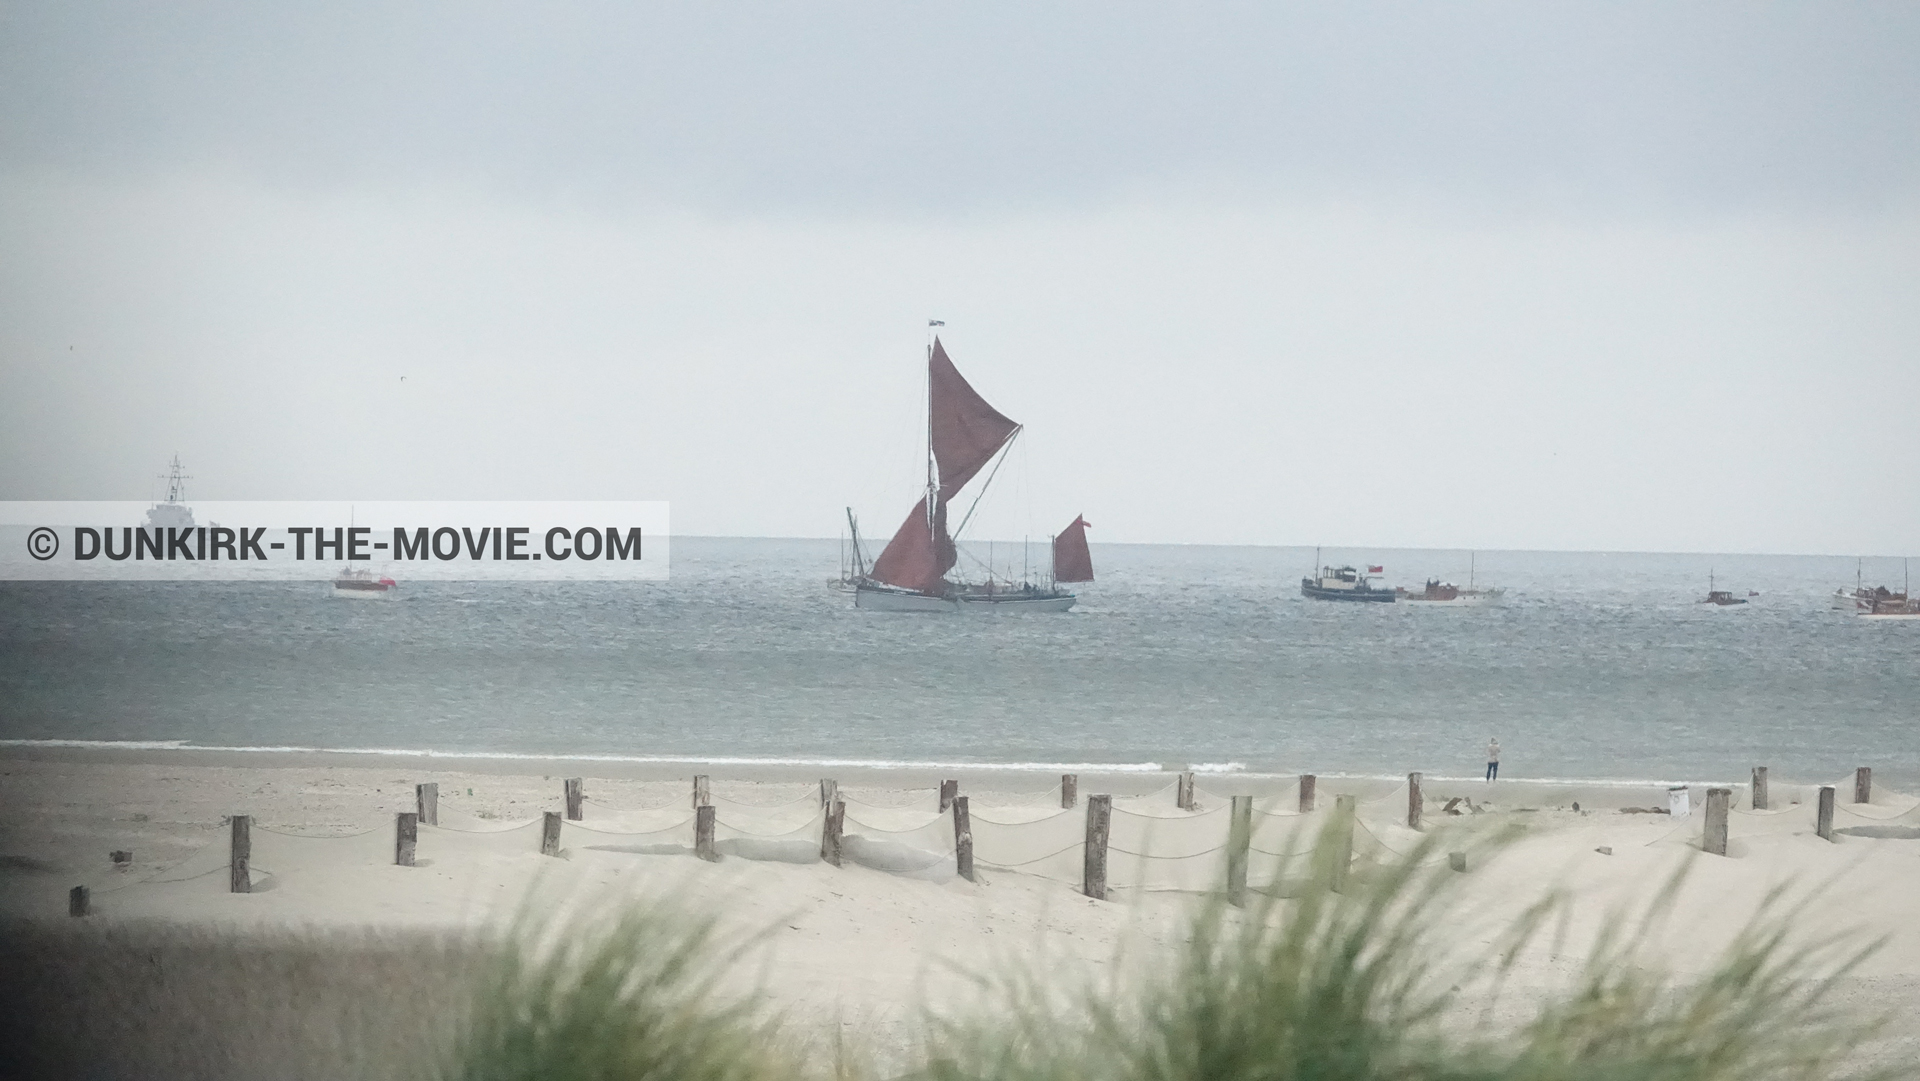 Fotos con barco, cielo gris, playa, del bote salvavidas Henry Finlay,  durante el rodaje de la película Dunkerque de Nolan